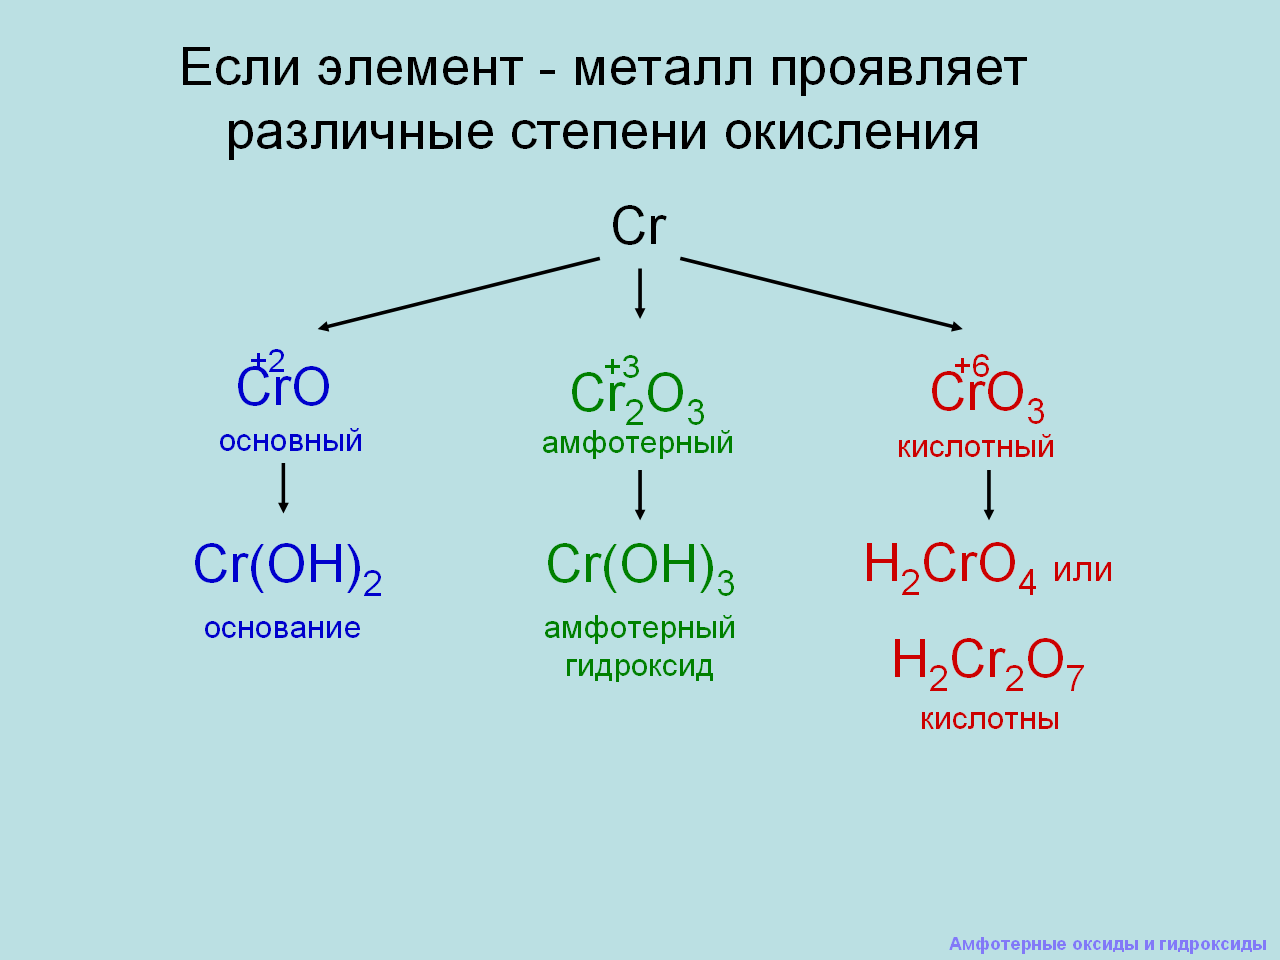 Li2o формула гидроксида. Амфотерные оксиды и гидроксиды 9 класс объяснение. Химия 8 класс амфотерные гидроксиды. Химия 9 класс амфотерные оксиды. Амфотерные оксиды и гидроксиды 8 класс конспект.